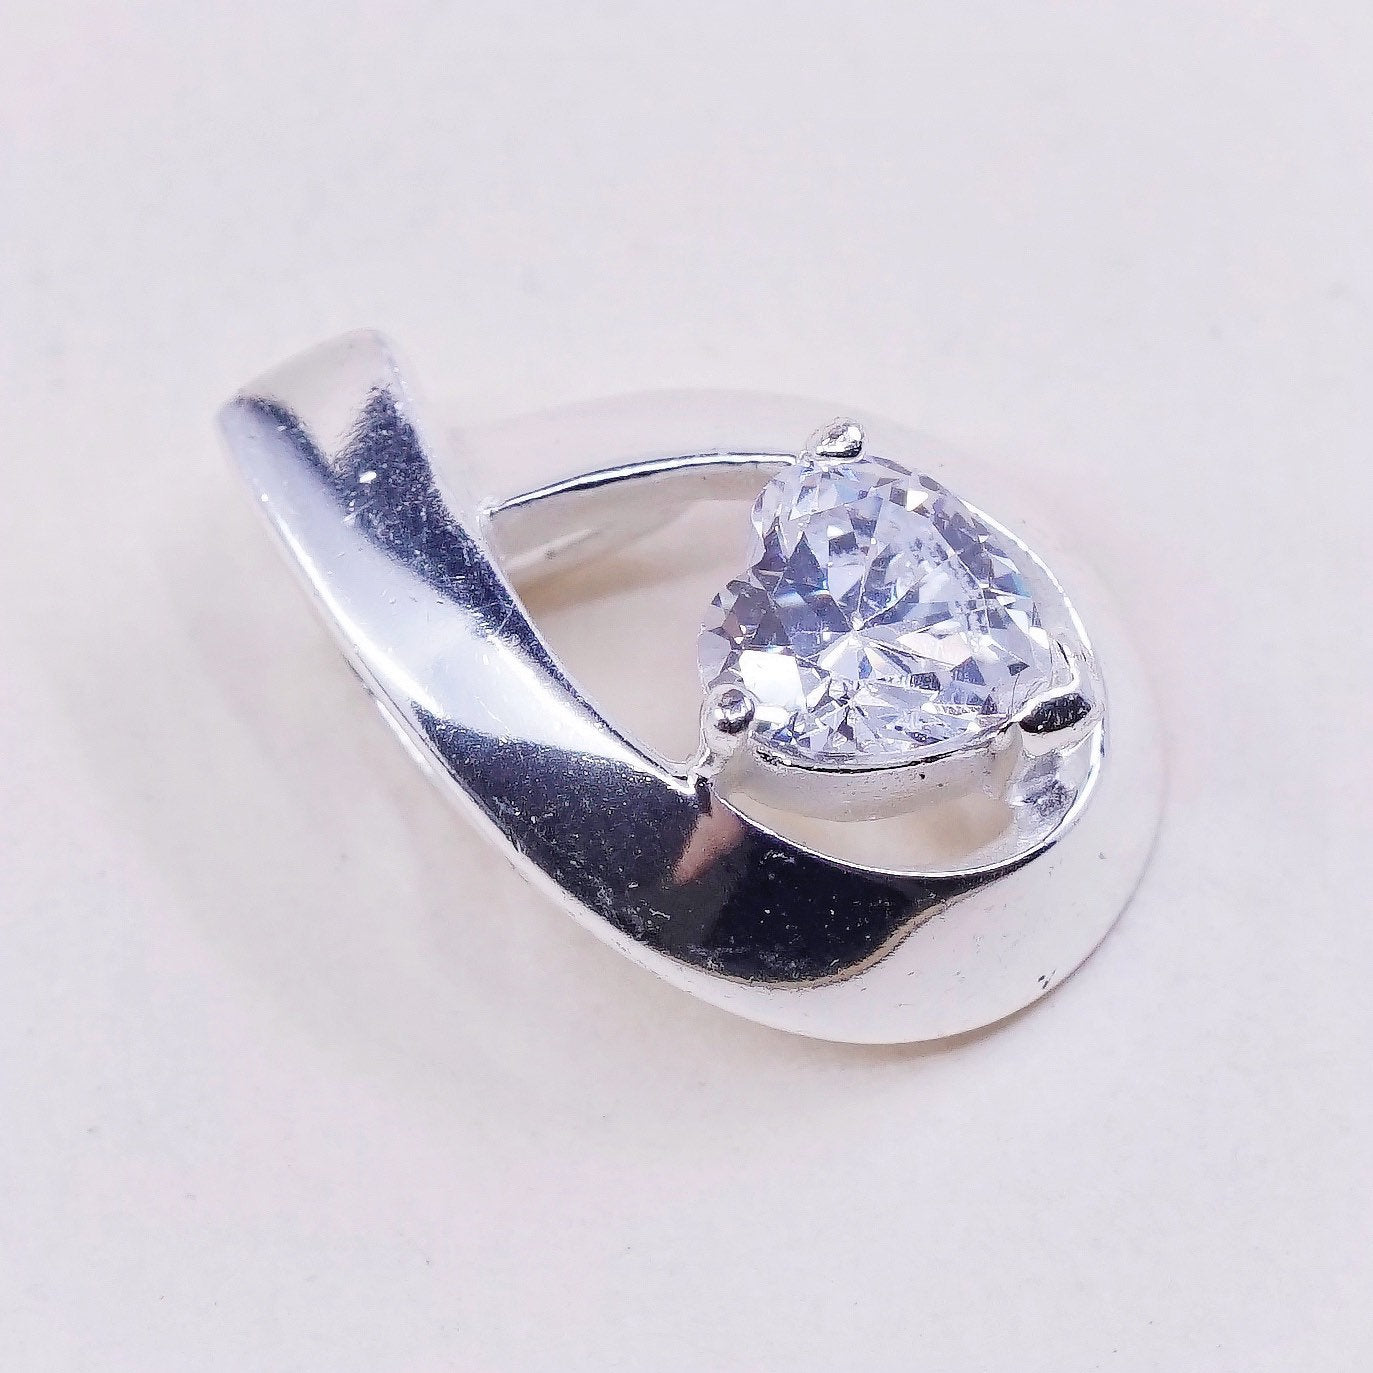 Sterling silver pendant, 925 w/ teardrop crystal “embrace dreams, follow heart”